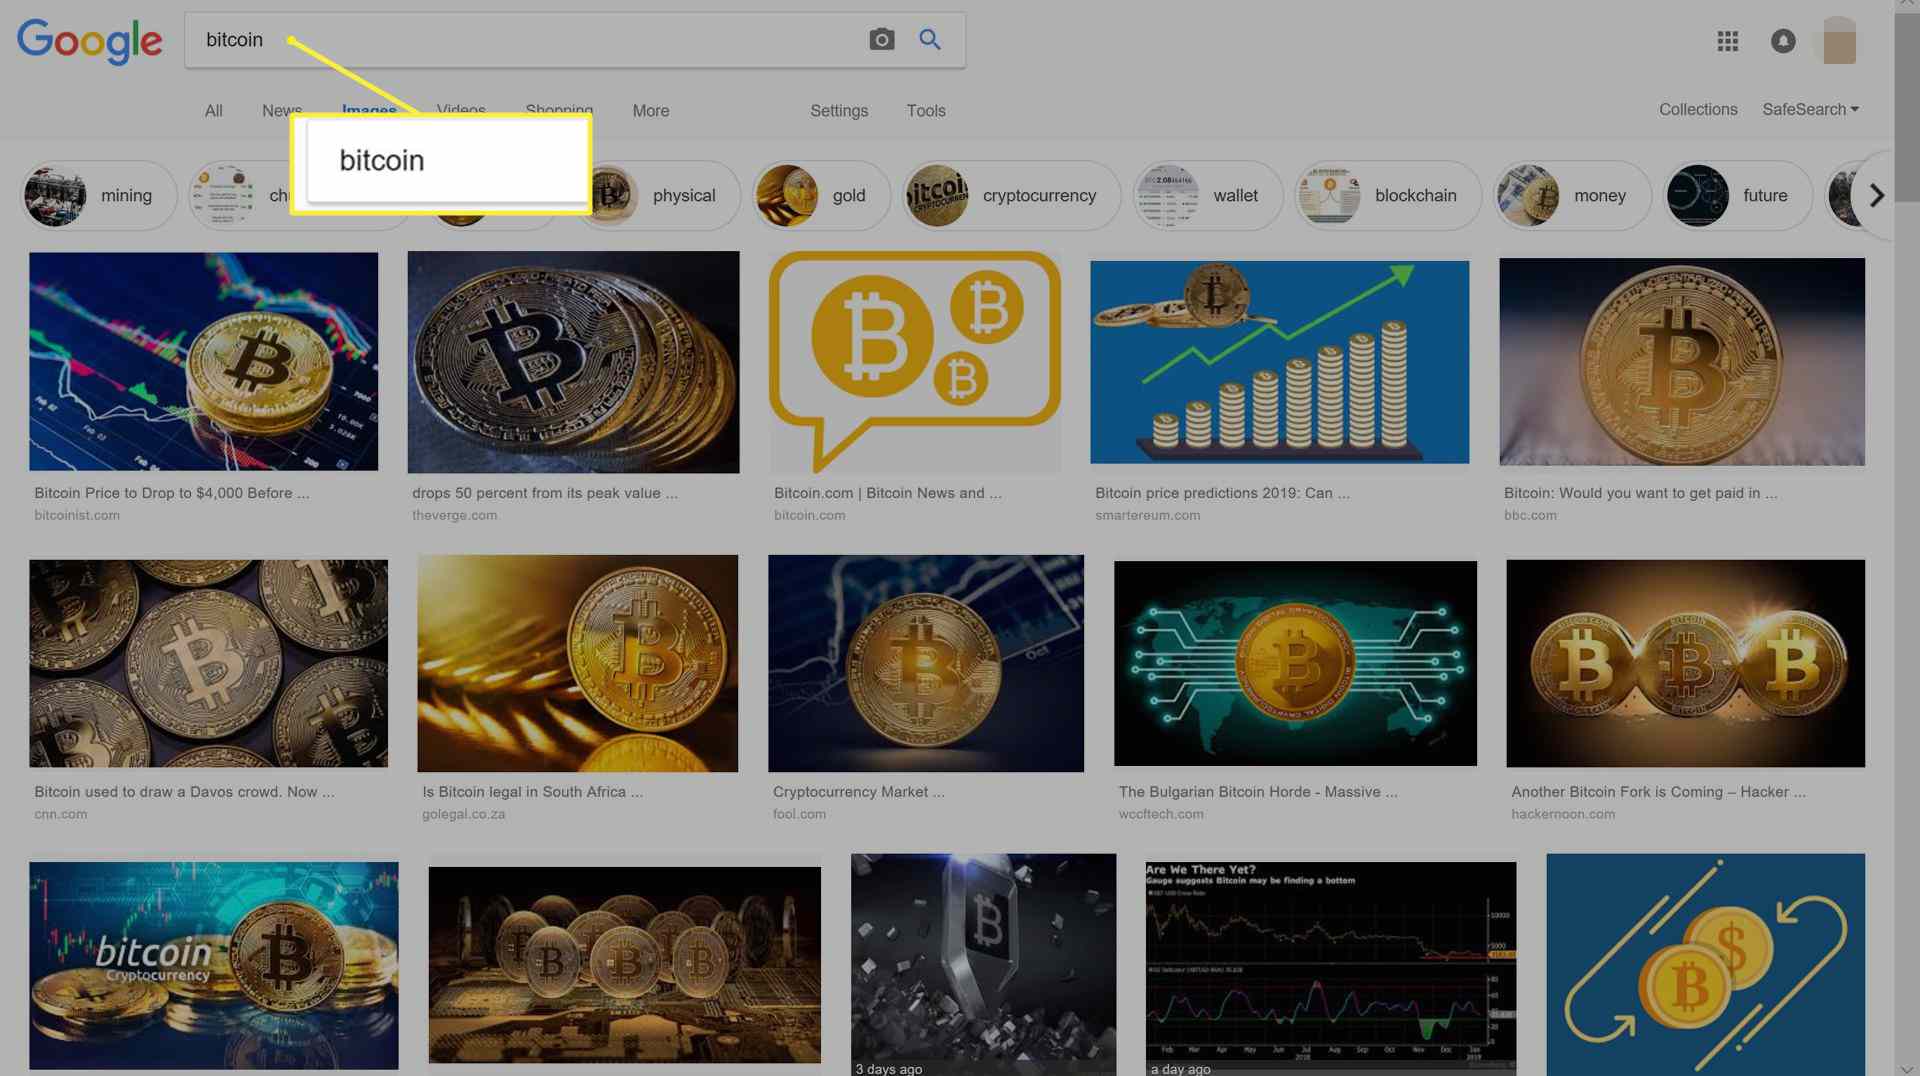 Hledaný výraz ve vyhledávacím poli Obrázky Google